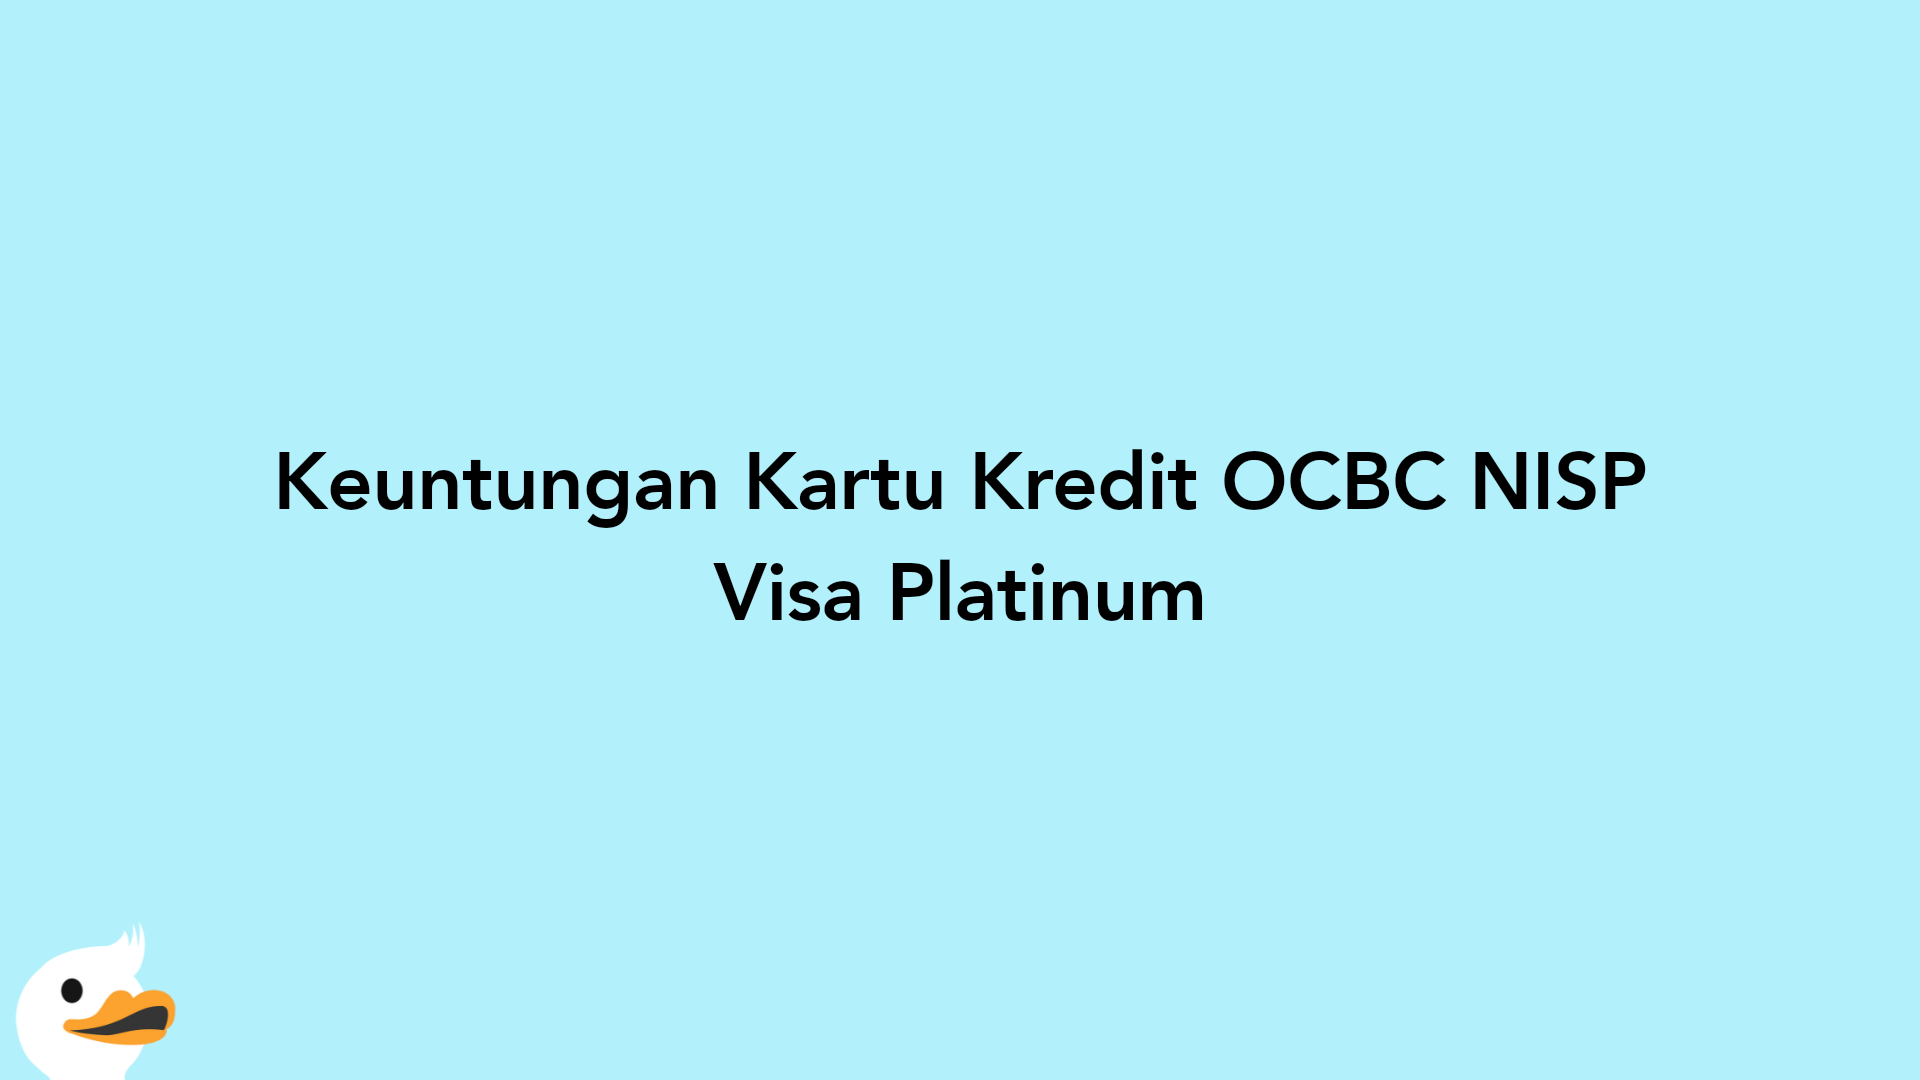 Keuntungan Kartu Kredit OCBC NISP Visa Platinum